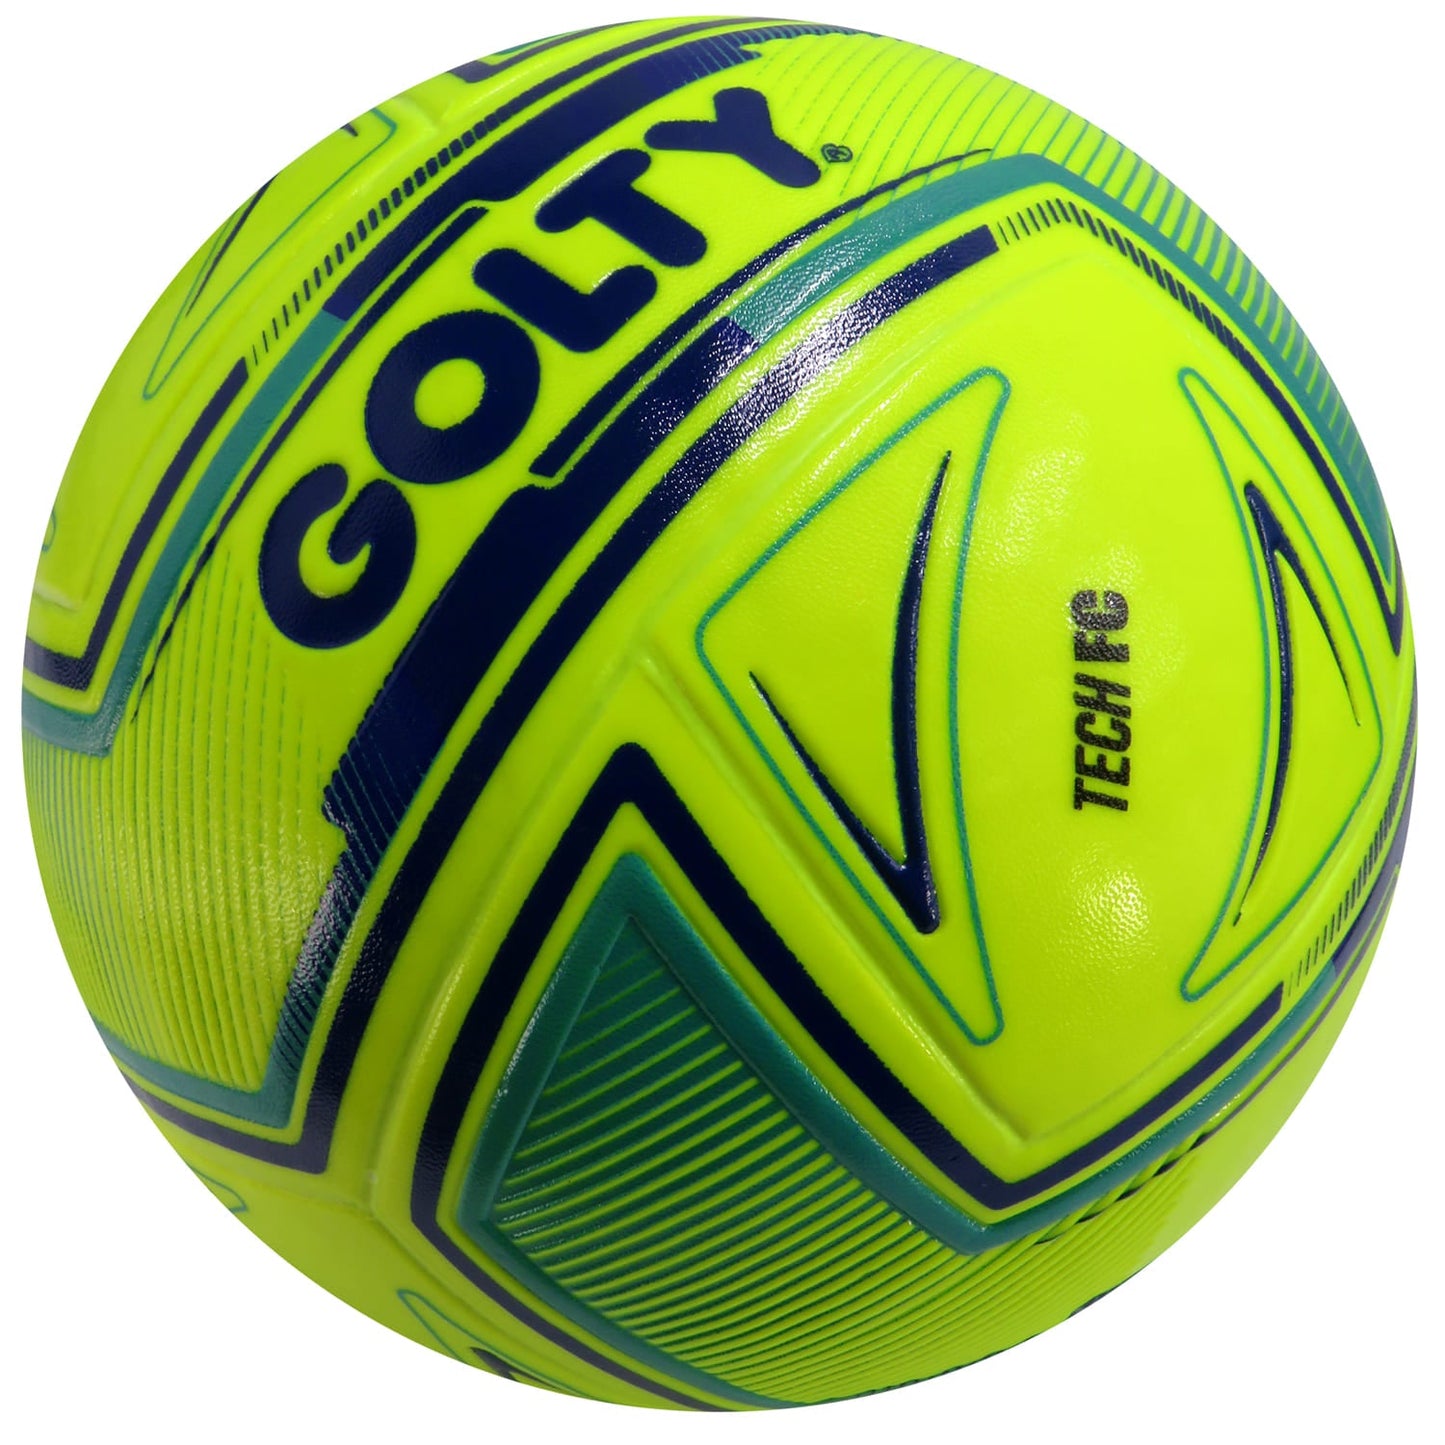 Balón Futbol Competencia Laminado Golty Tech FC